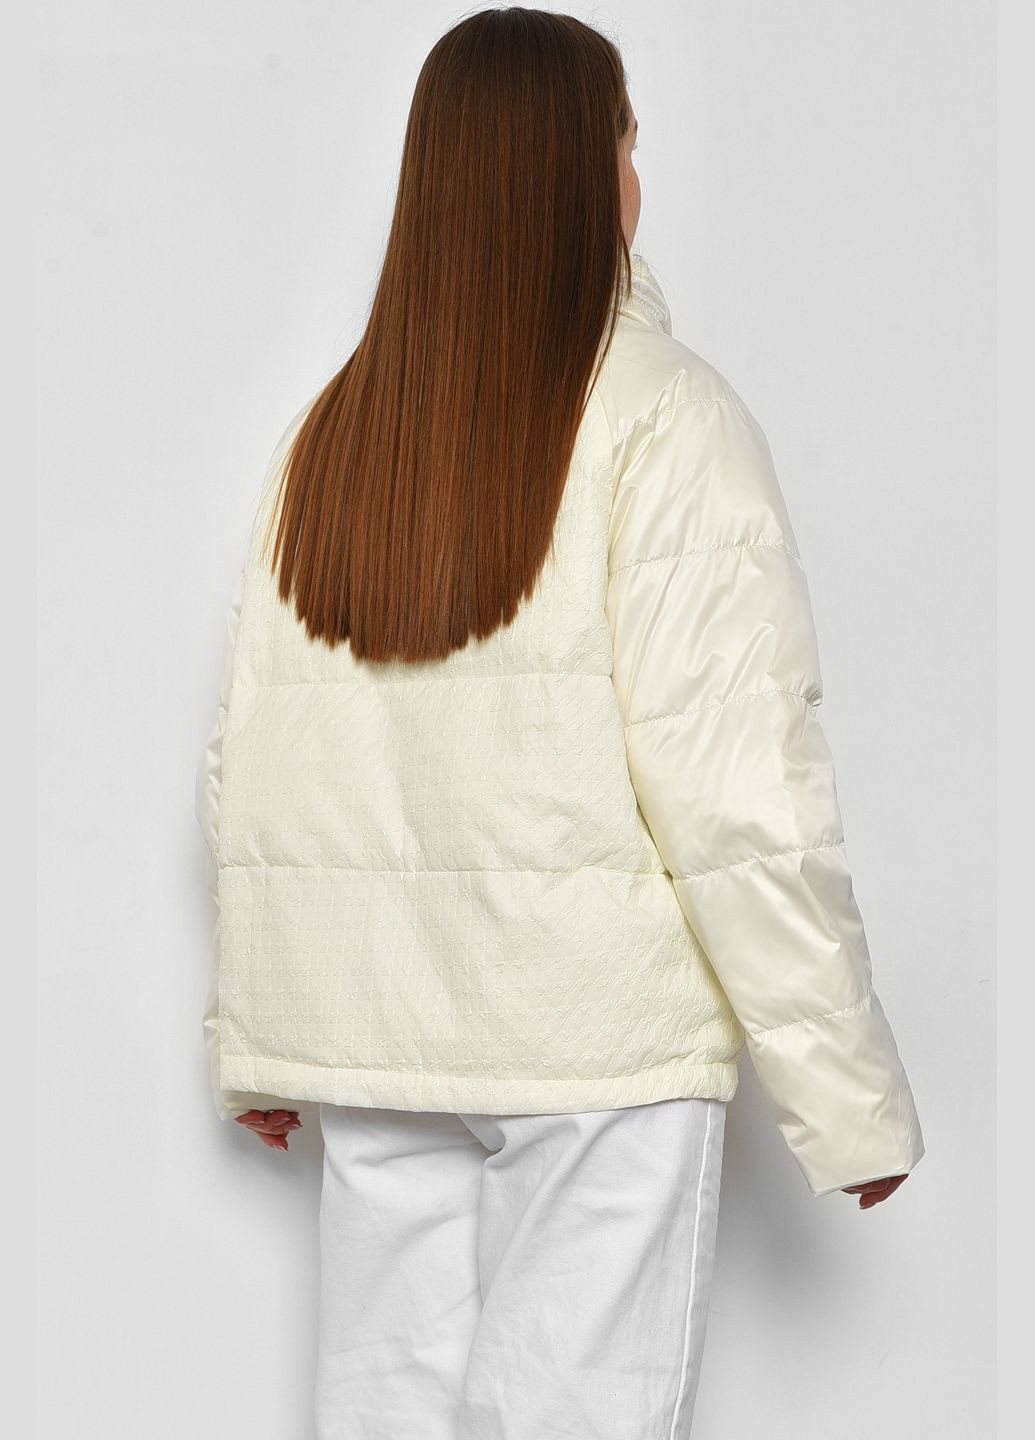 Молочная демисезонная куртка женская демисезонная молочного цвета Let's Shop